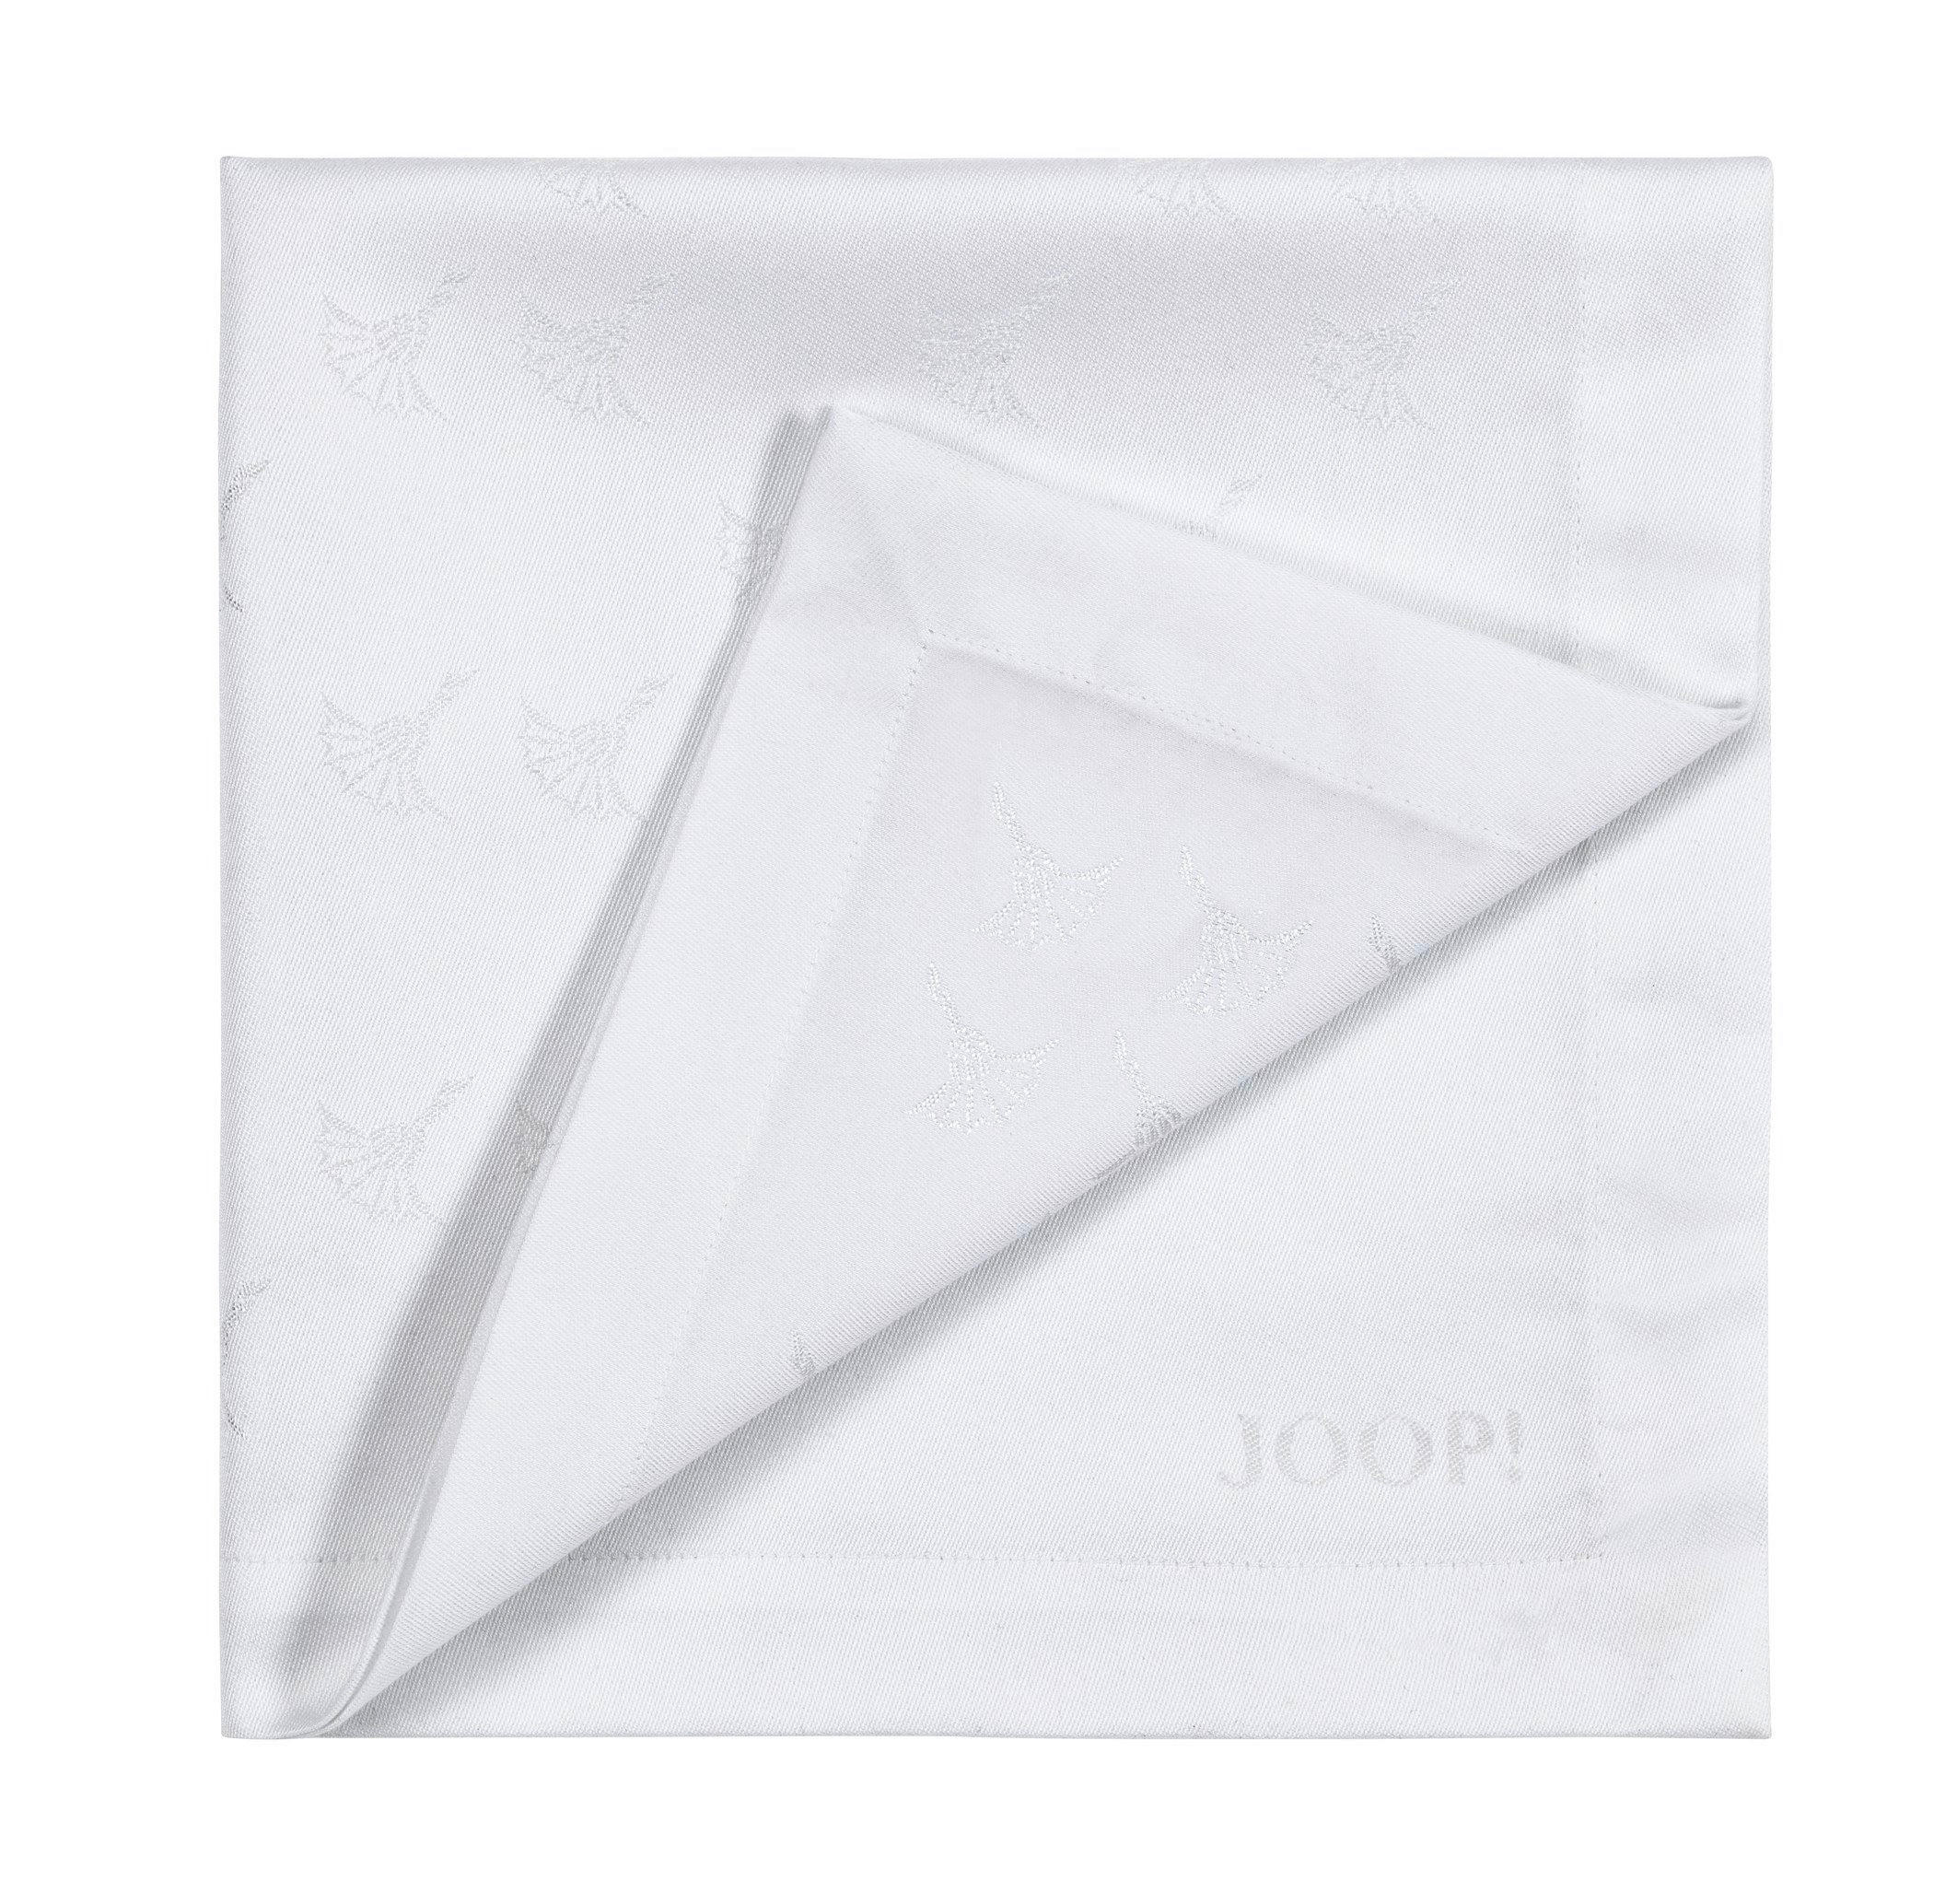 SERVIETTEN-SET 50/50 cm   - Weiß, Design, Textil (50/50cm) - Joop!